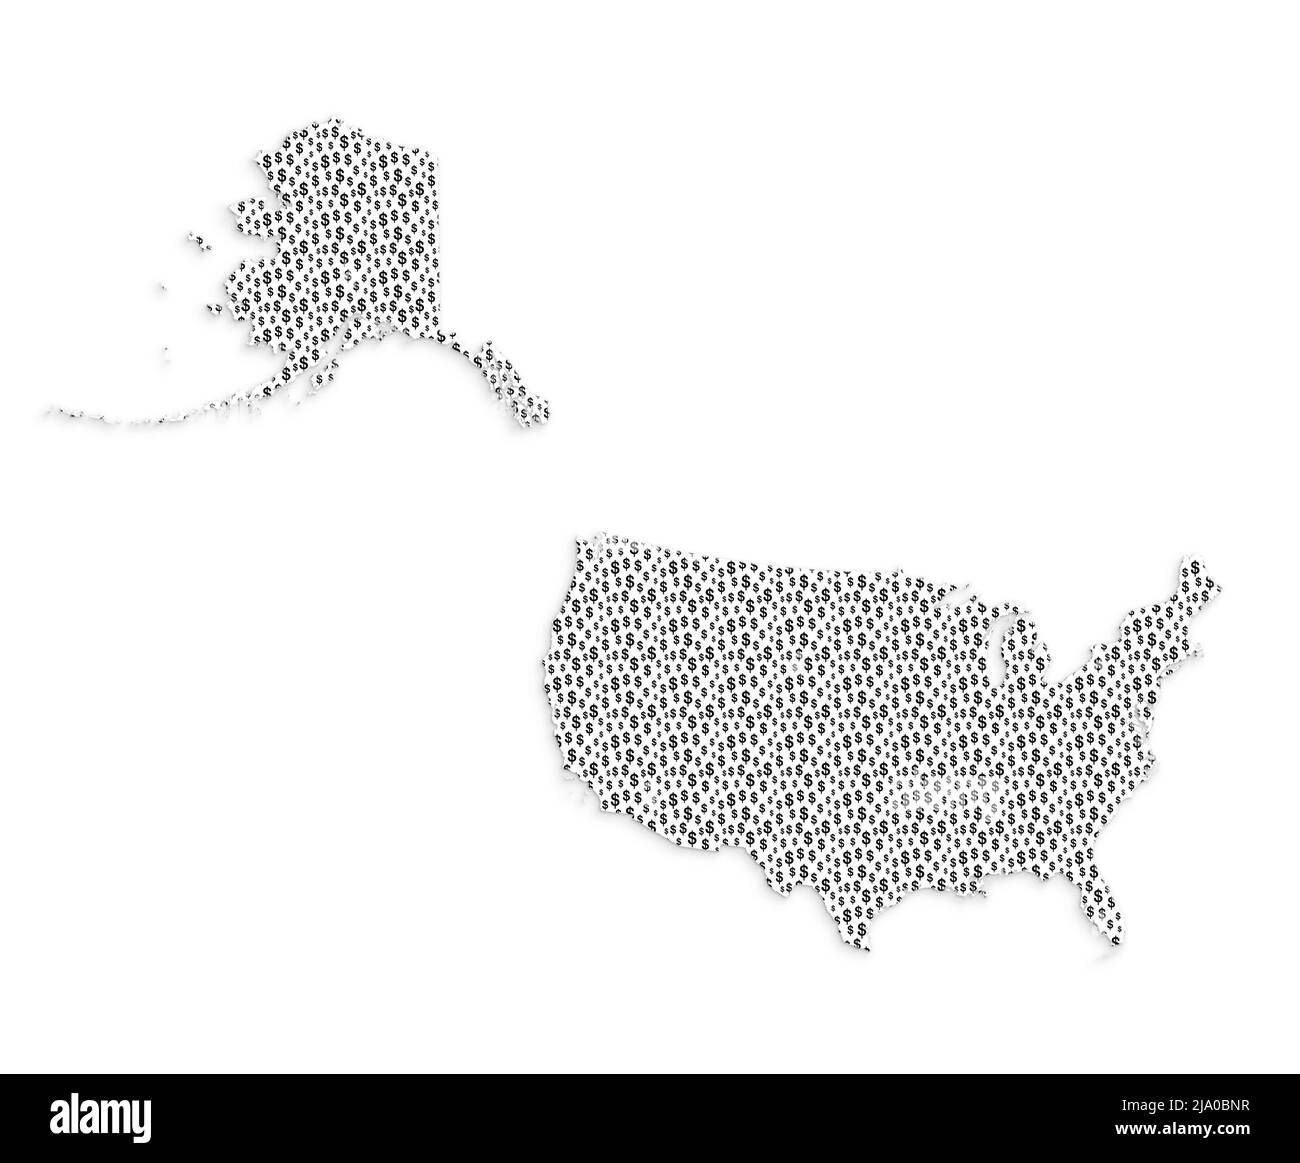 MAPPA DEGLI STATI UNITI (Stati Uniti d'America, USA) fatta di simboli del dollaro, effetto di taglio della carta. Illustrazione concettuale astratta su sfondo bianco. Foto Stock